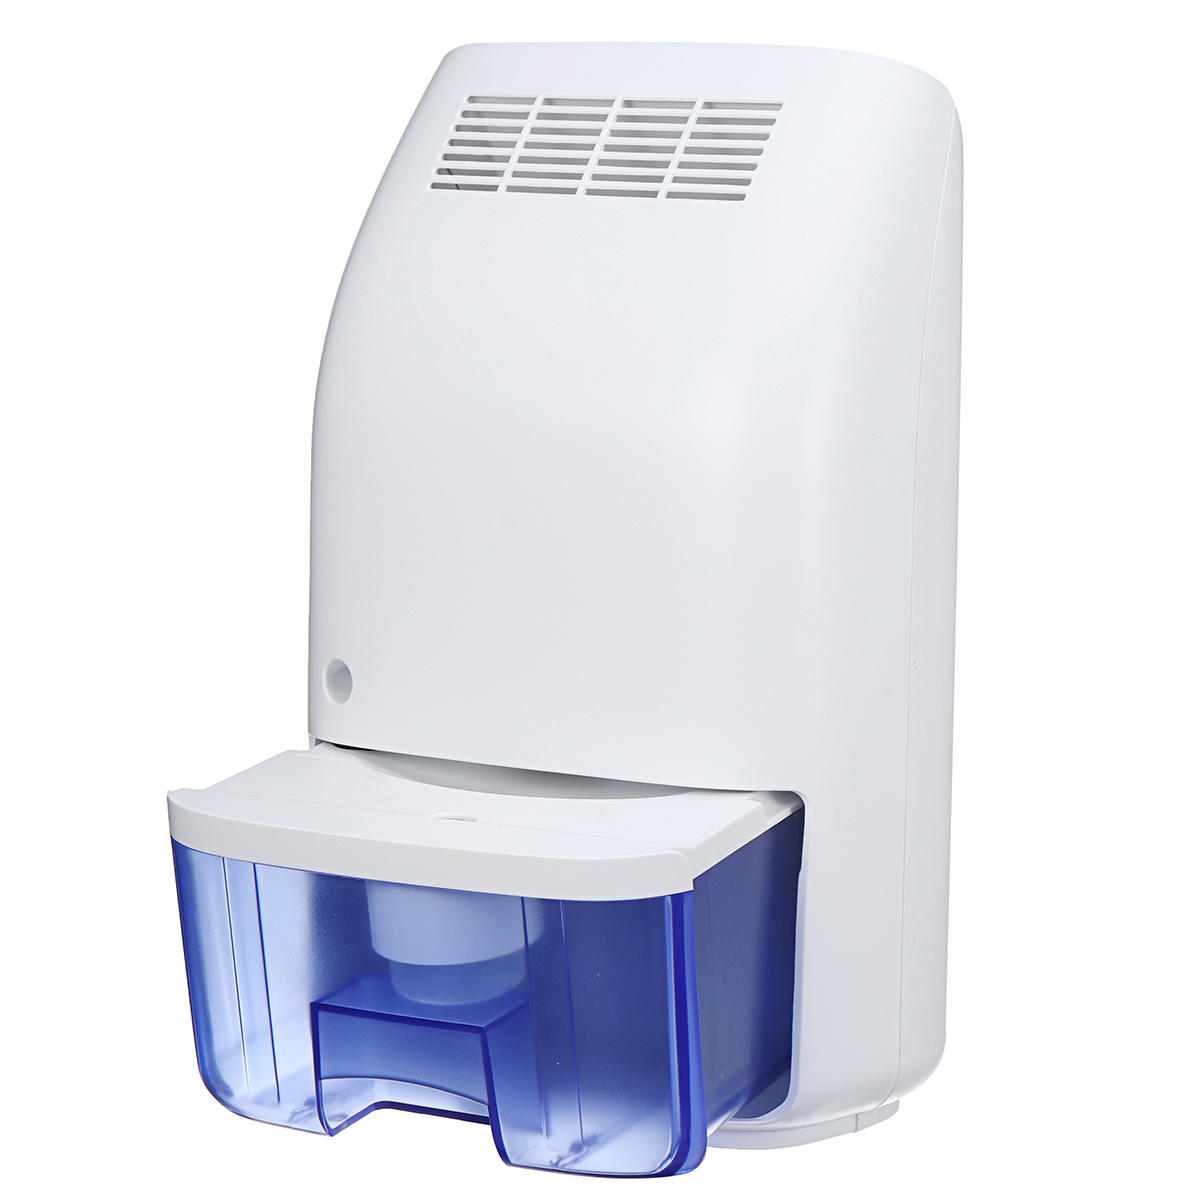 

700ML 23W Mini Electric Water Air Dehumidifier Mute Air Dryer Moisture Damp For Home Office Bathroom